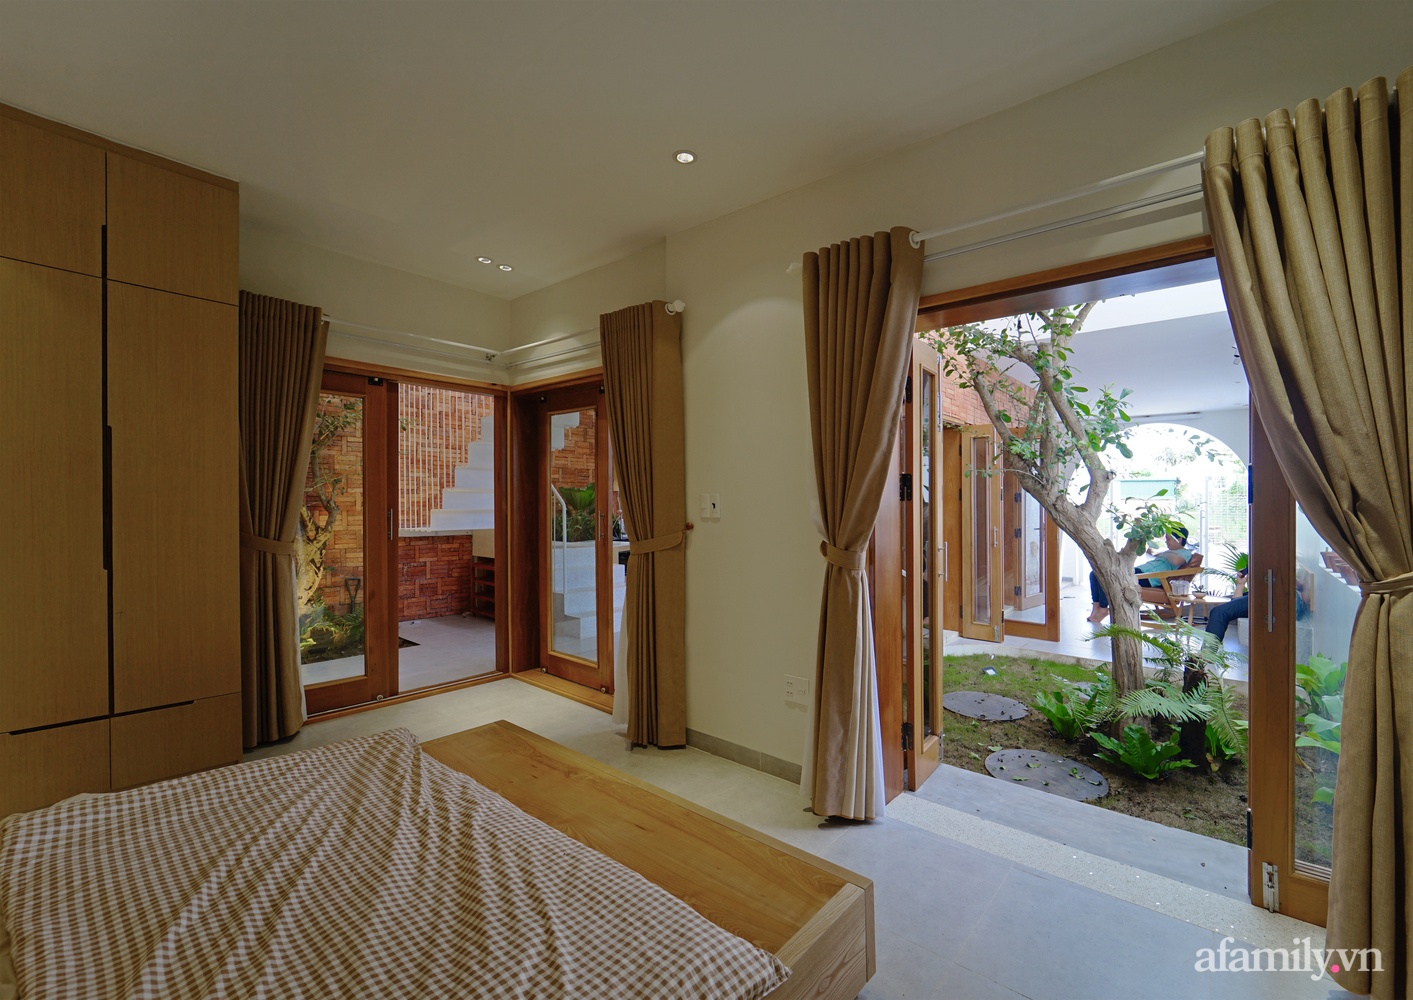  Khu vực phòng ngủ được bố trí ngăn cách với khu vực chính bằng cửa kính khung gỗ và rèm để tạo sự riêng tư cần thiết.